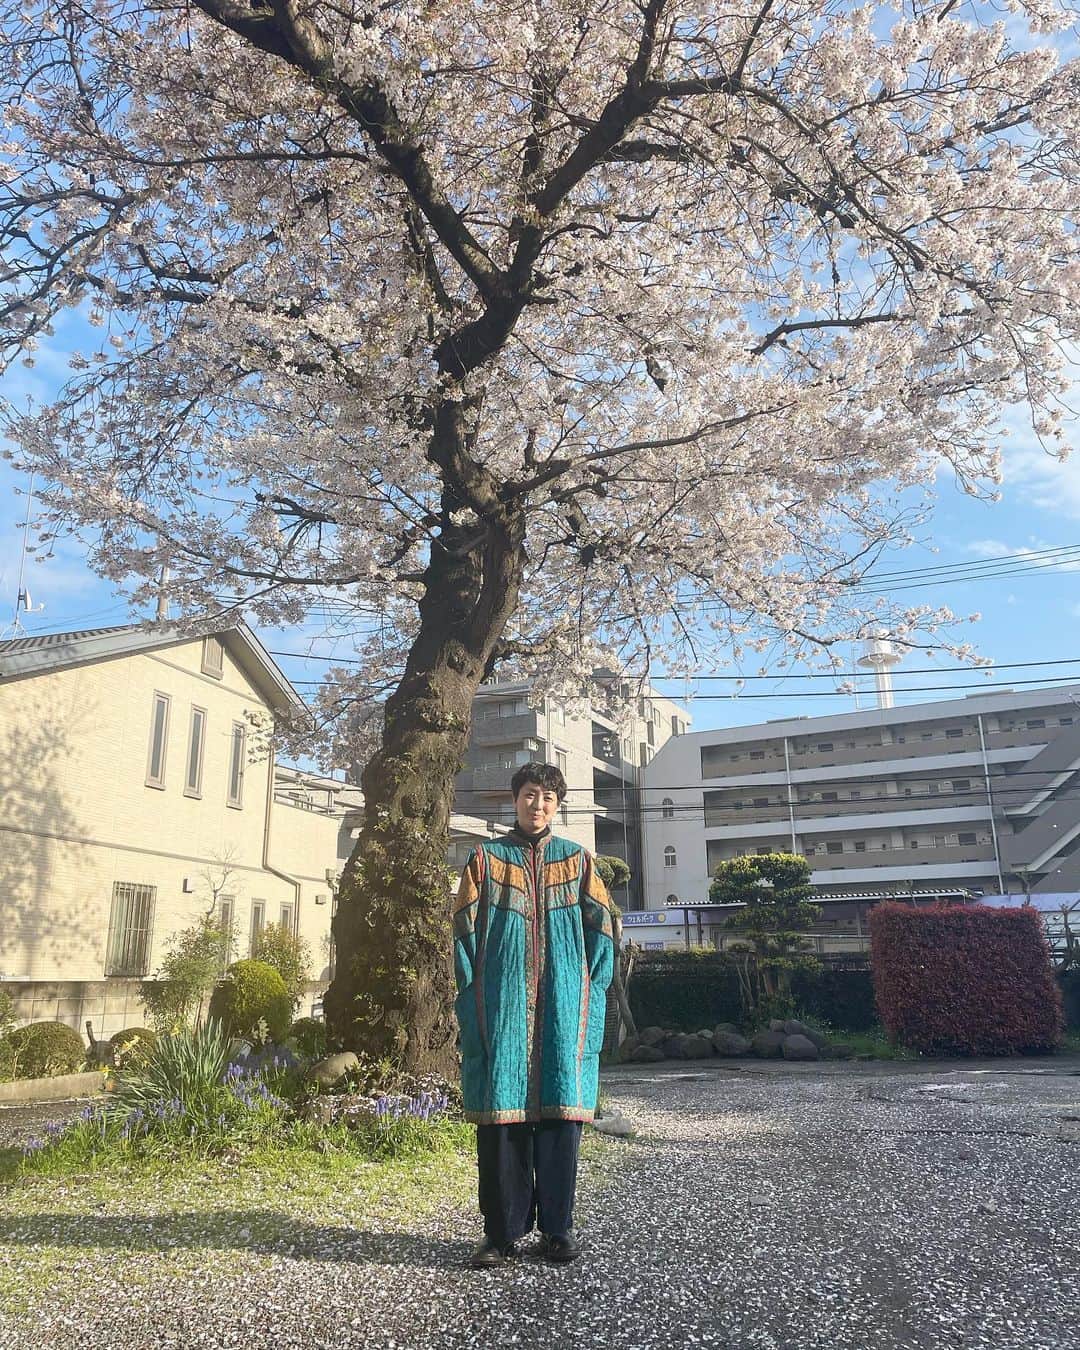 Boojilさんのインスタグラム写真 - (BoojilInstagram)「🌸桜満開。東京おかっぱちゃんハウスの桜、毎日じっとこの土地を守って、春になるとこっちをごらんよ。と、花を咲かせてみんなを笑顔にさせてくれるとても優しい桜の樹です。  わたしは東京に暮らす前、中南米〜南米を旅していました。  あの旅で培ったものは、色彩のエネルギーとその自由さ、手仕事の高度な技術、そしてそこから生まれる人と人とのコミュニケーションの重要さ。東京に戻り、その自分の見てきた景色を、少しずつ分かち合い、ひとりひとりの暮らしが少しでもいい豊かなものになったら嬉しい。  そう思って、お店をこの古民家で立ち上げ、絵を描きながら、様々なイベントを開催してきました。結婚、出産を経て、夫が脱サラしてからは、仕事のパートナーになり、彼がお店で自分の得意なことがなんなのか、やりたいことはなんなのか模索し、そのサポートを子育てをしながら8年間、もうこれ以上ないくらいやり切ったように思います。彼が大学生だった頃から、遡れば約20年応援してきた。  内側に何か光るものがあるはずなのに、それがなんなのか彼自身気付けないまま、時は経ち、私たちは38歳になりました。  振り返ると、わたしがやりたかったこと、実現したかった夢はいつからか、彼の夢のサポートをすることで大切な場所を譲るような形へと変化していったように思います。  流れるままに今にたどり着いていて、今になってこの形になったのは仕方ない、彼がずっとくすぶっていた自己表現に辿り着いたことを素直に喜ぼうと思います。今日をスタート地点とし、過去にとらわれず、今からこの場所で何ができるか。  そう考えるようにしたら、希望に満ち溢れた場所であるはず。楽しいと思うこと、みんなで笑い合える事、きっとまたわたしはここで生み出せると思う。  この8年で世界も大きく変わってしまい、それぞれの価値観も変化し、求められるものも、変化している。求められるものを仕事にするんじゃなくて、自分が求めるものを形にするから求められるんです。お金じゃなくて、情熱がないとスタートしても続かない。  右往曲折、いろんなことがあったけれど、不思議なもので彼は彼で絵の道を選んだ。まさかね〜同じ世界に踏み込むとは思っても見なかった。  この8年、ずっとこの大きな桜の樹は我が家の変化を見守り続けてきました。わたしが幸せなときも、苦しくて泣いたときも、そしていま少しだけ弱っているわたしをも、優しく包んでくれているようです。  自分の新しい道を選び抜いた時、人はものすごい力を発揮するように思います。それは誰でもない、自分の力を信じたからこそ湧き出るエネルギー。誰かに頼まれたり、誰かに支えてもらったから生まれるものじゃない。　　　　  夫とは知り合って20年。結婚して8年。 もう私ができることは全てやり切ったと、思っていて。 いい意味で手放すことを決めました。それは彼のためでもあり、自分のためでもある。互いの幸せをそれぞれが責任をもって頑張る。我儘を押し通すんじゃなくて、認め合う、そういうパートナーシップを組めたら良いなと思います。  今年いっぱいでパートナーだった夫は、東京おかっぱちゃんハウスを卒業します。わたしはまた新しいパートナーを探すため、新しい出会いをたくさん求めるでしょう。  わたしの中にある"愛する"という感情は、その人を支え、応援することです。夫婦、家族とはそういうものだと思っていました。世界は広い、いろんなパートナーシップがあるんです。この歳にして初めて知ること、たくさんあるんだなぁって。  でもこれからは考え方を変えて、わたしがわたしを愛すること、わたしが誰よりも大事な自分のパートナーであり、自分を全力で応援することに決めました。  これまでの経験で力を込めて精一杯、働き尽くす経験も経たから、毎日深呼吸したり、身体を労ったり、そんな自分を優しく愛でながら、絵を描く人生もいいな。と最近は思います。  なんか、最近自分の死がとても近くにある気がして、はて？最後までせかせか仕事に追いやられていたいかい？と、自分に問うとやっぱりわたしはいつだって笑顔でいたいし、絵を描いて、誰かを笑顔にしたいんだと感じます。  こどもたちもいるし、愛しているよ全力で。でも、母であるわたしより、わたしはわたしを生き抜きたい。  母業なんてあと10年そこらでメインの仕事は終わっちゃう。今から未来の私につながることを、楽しみに自分の土壌をふかふかに整える。そこからたくさんの芽が出て、やがて小さくとも可愛らしい花が咲けばと思います。  この桜の樹を勝手ながらずっと自分を見守ってくれる優しい友達だと思っていました。良い時の私も、悪い時の私も全部あなたは知っているのに、何ひとつ声を発さずに、そのまま変わらずに優しく側にいてくれる。  わたしはそういう絵が描きたい。厳かに飾られたいわけでもなく、あなたのそばに寄り添えるような。眺めると優しい気持ちになれるような、そんな絵を、ずっと描き続けられるようにわたしを新しく育てていく。  春が来るとちゃんと花を咲かせて、わたしだけでなくみんなを優しい気持ちにさせてくれるあなたを、心から尊敬しています。わたしもそんなあなたのように、どっしりとした人間でありたいなと思う。  この春のことを、わたしは一生忘れないと思う。」3月30日 9時48分 - boojil